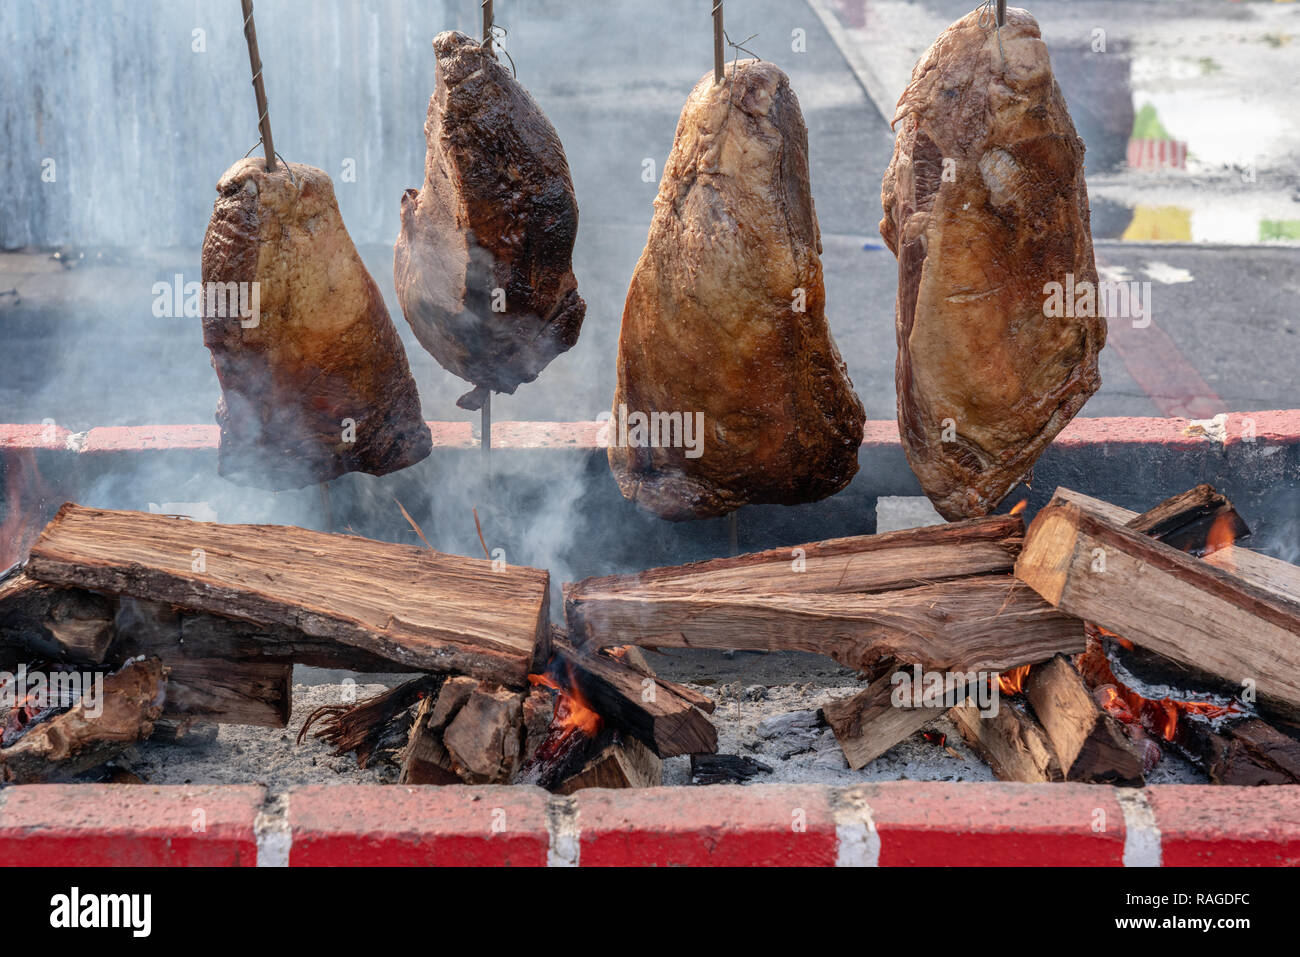 Cocinar la carne sobre fuego abierto o un asado Fotografía de stock - Alamy